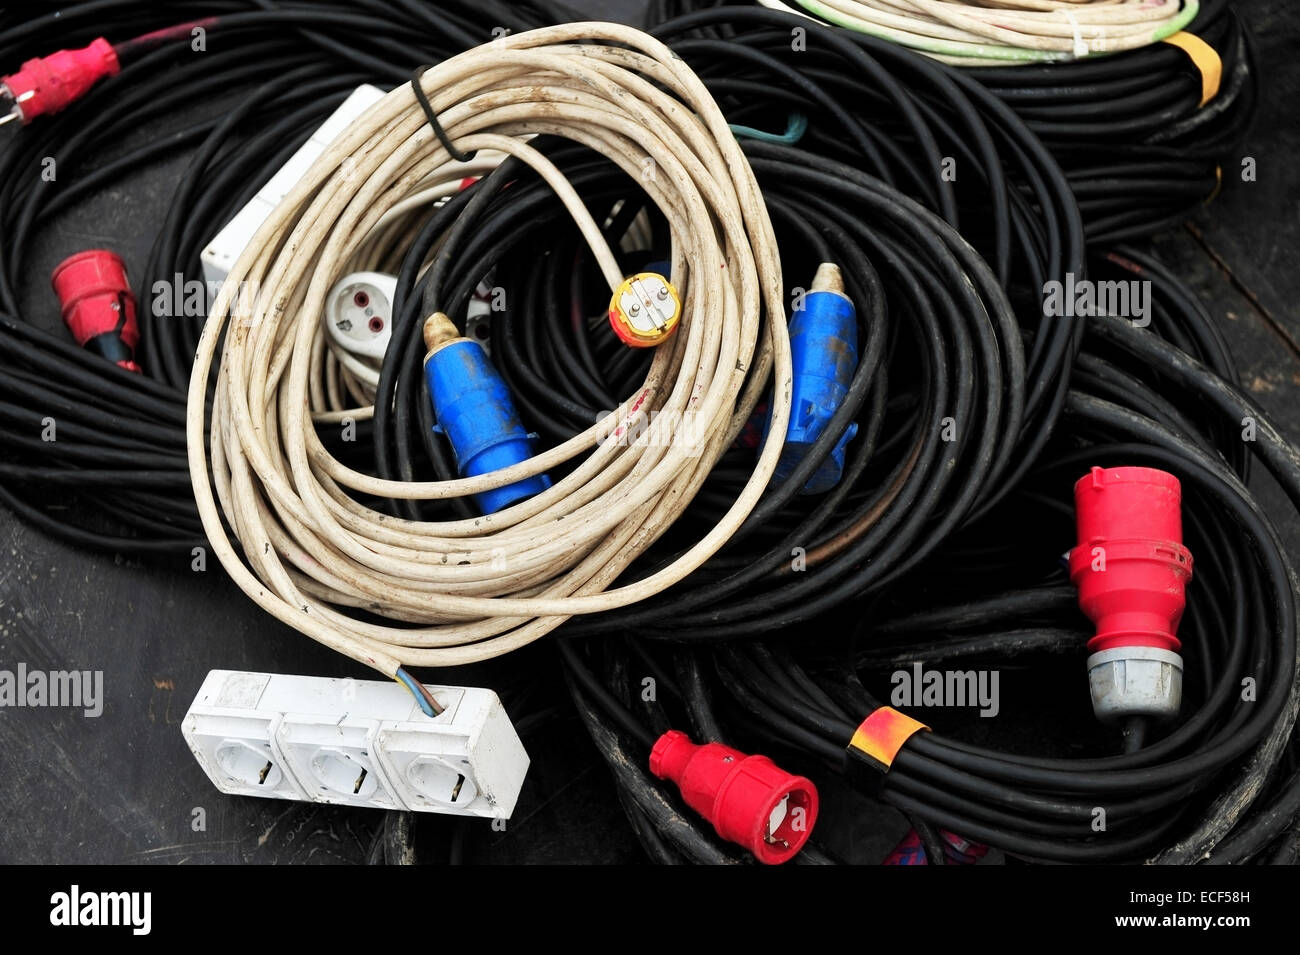 Varios cables de energía eléctrica con alargadores y enchufes Foto de stock